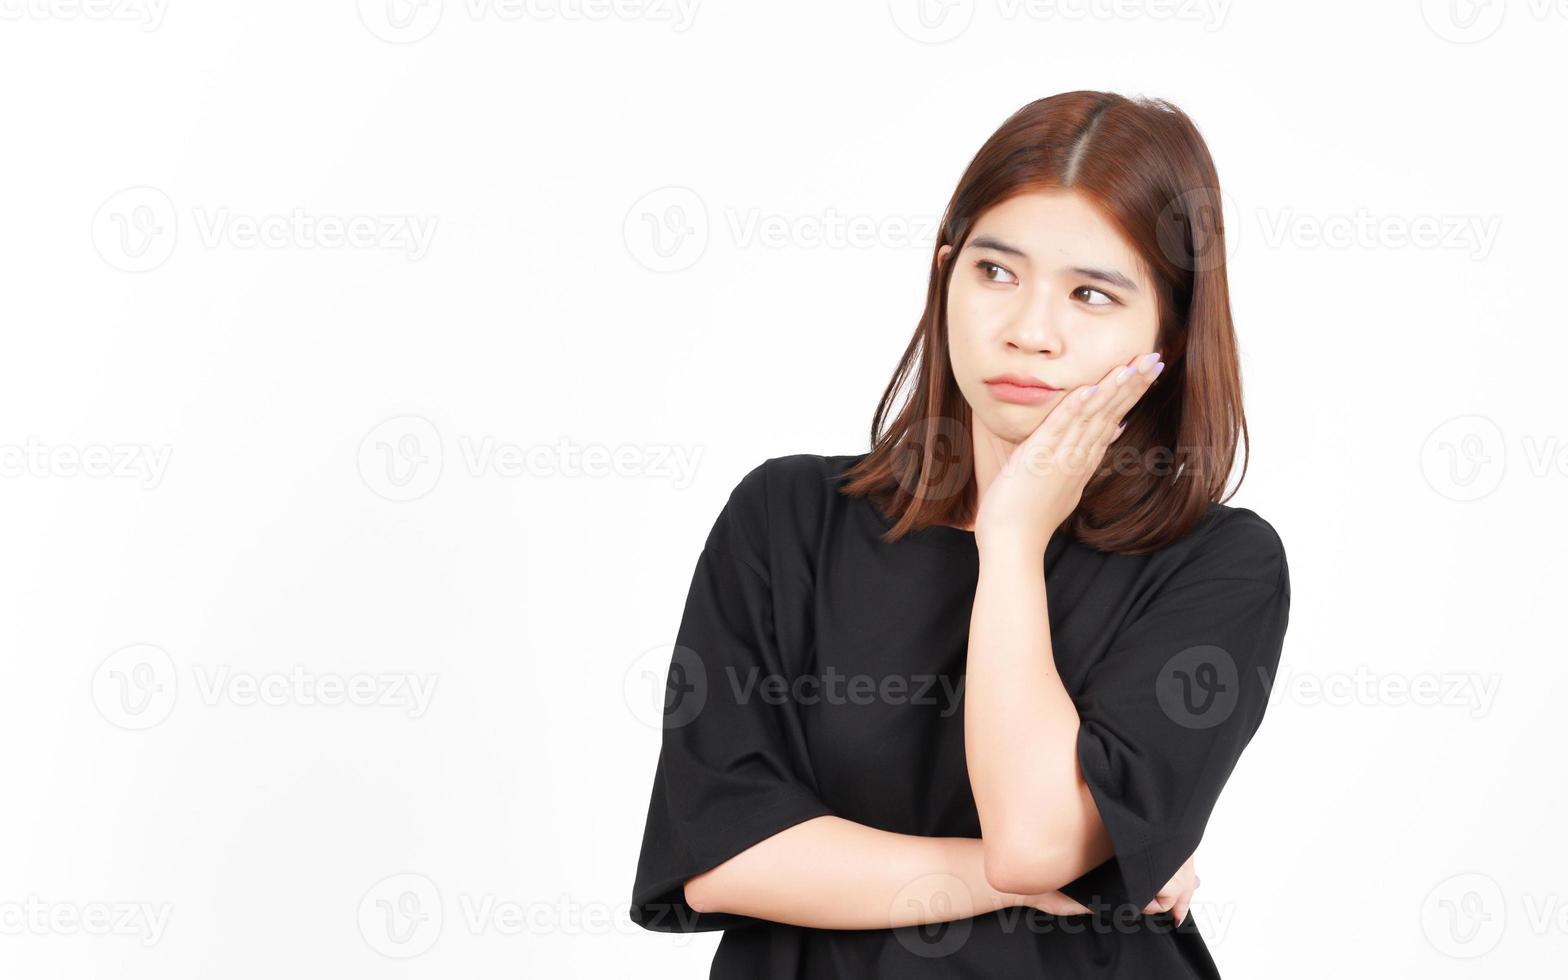 tråkig gest av skön asiatisk kvinna isolerat på vit bakgrund foto